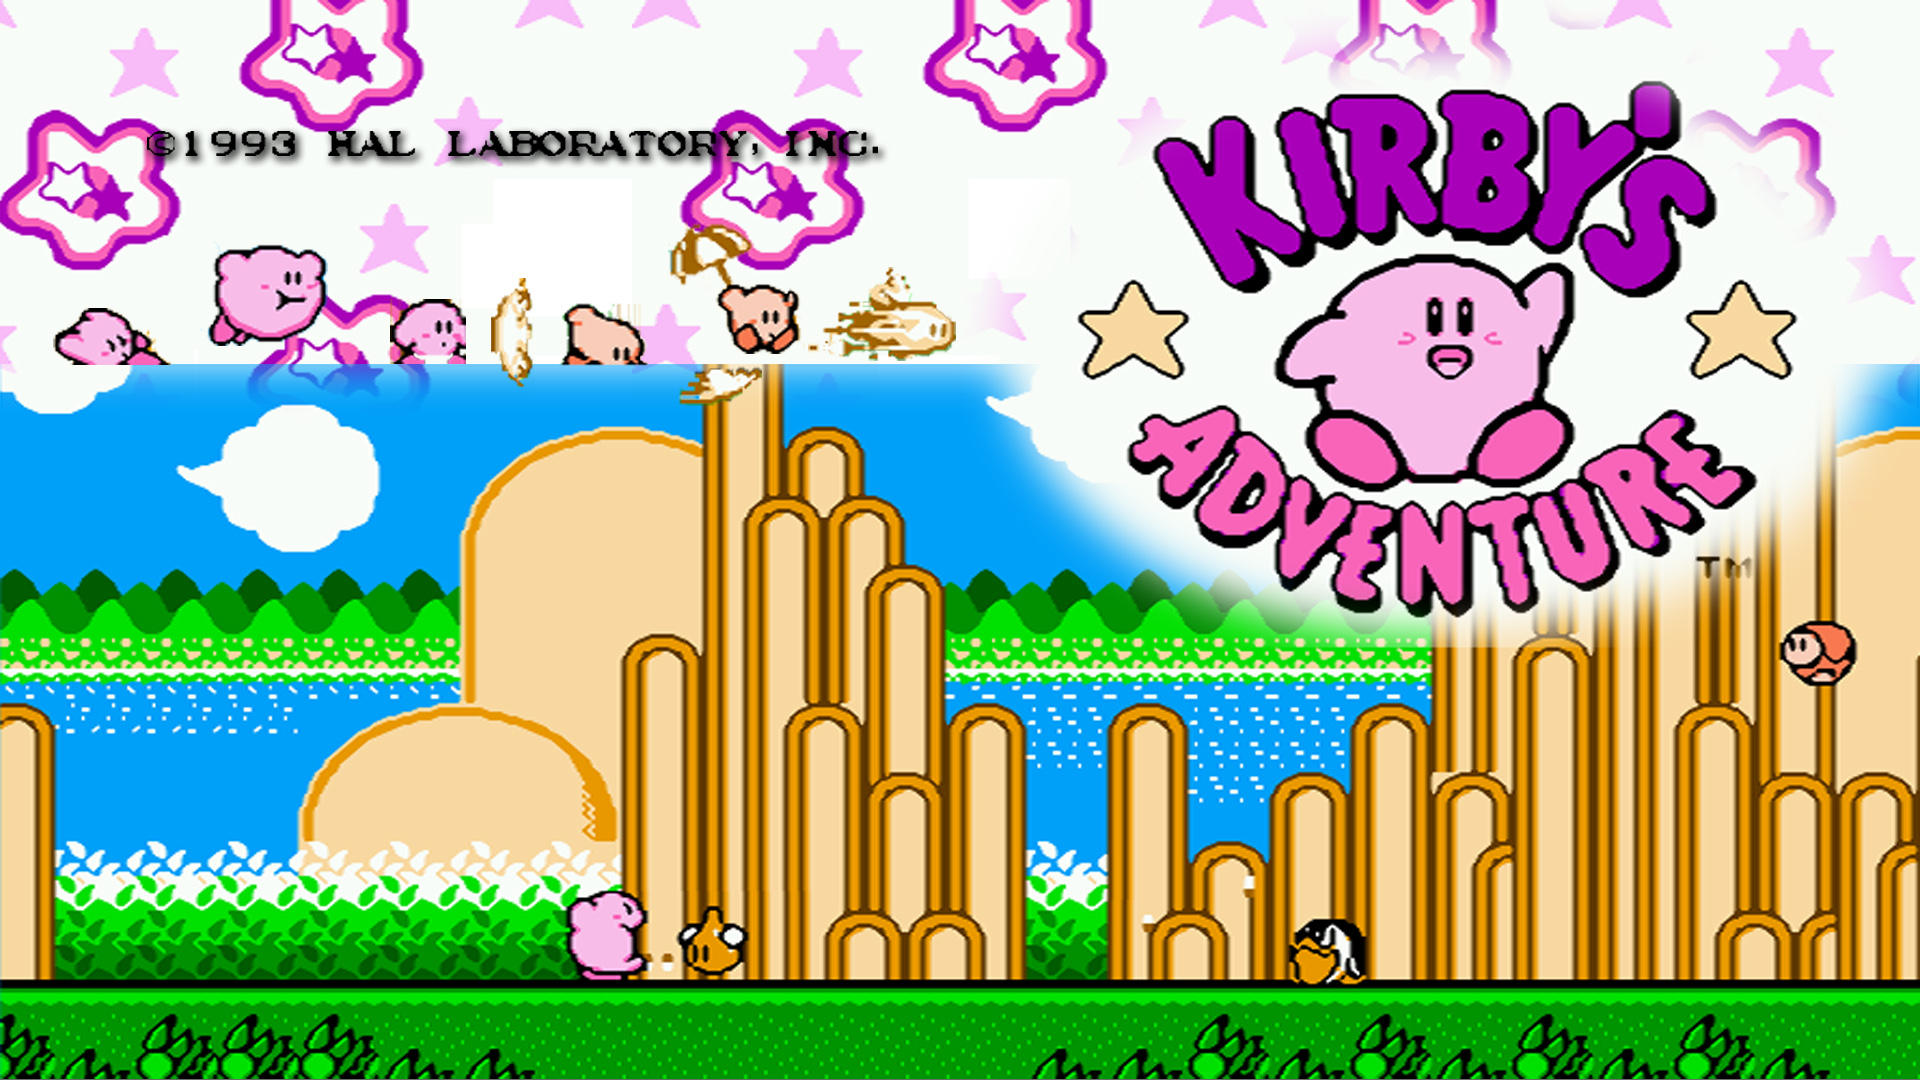 Kirby\'s Adventure HD Wallpaper - hình nền HD Kirby phiêu lưu: Nếu bạn là một fan của Kirby thì đây chắc chắn là điều bạn đang tìm kiếm. Hình nền HD Kirby phiêu lưu sẽ mang đến cho bạn những trải nghiệm tuyệt vời nhất về thế giới của Kirby. Hãy tải về và trang trí desktop của bạn với hình nền HD Kirby phiêu lưu ngay hôm nay.